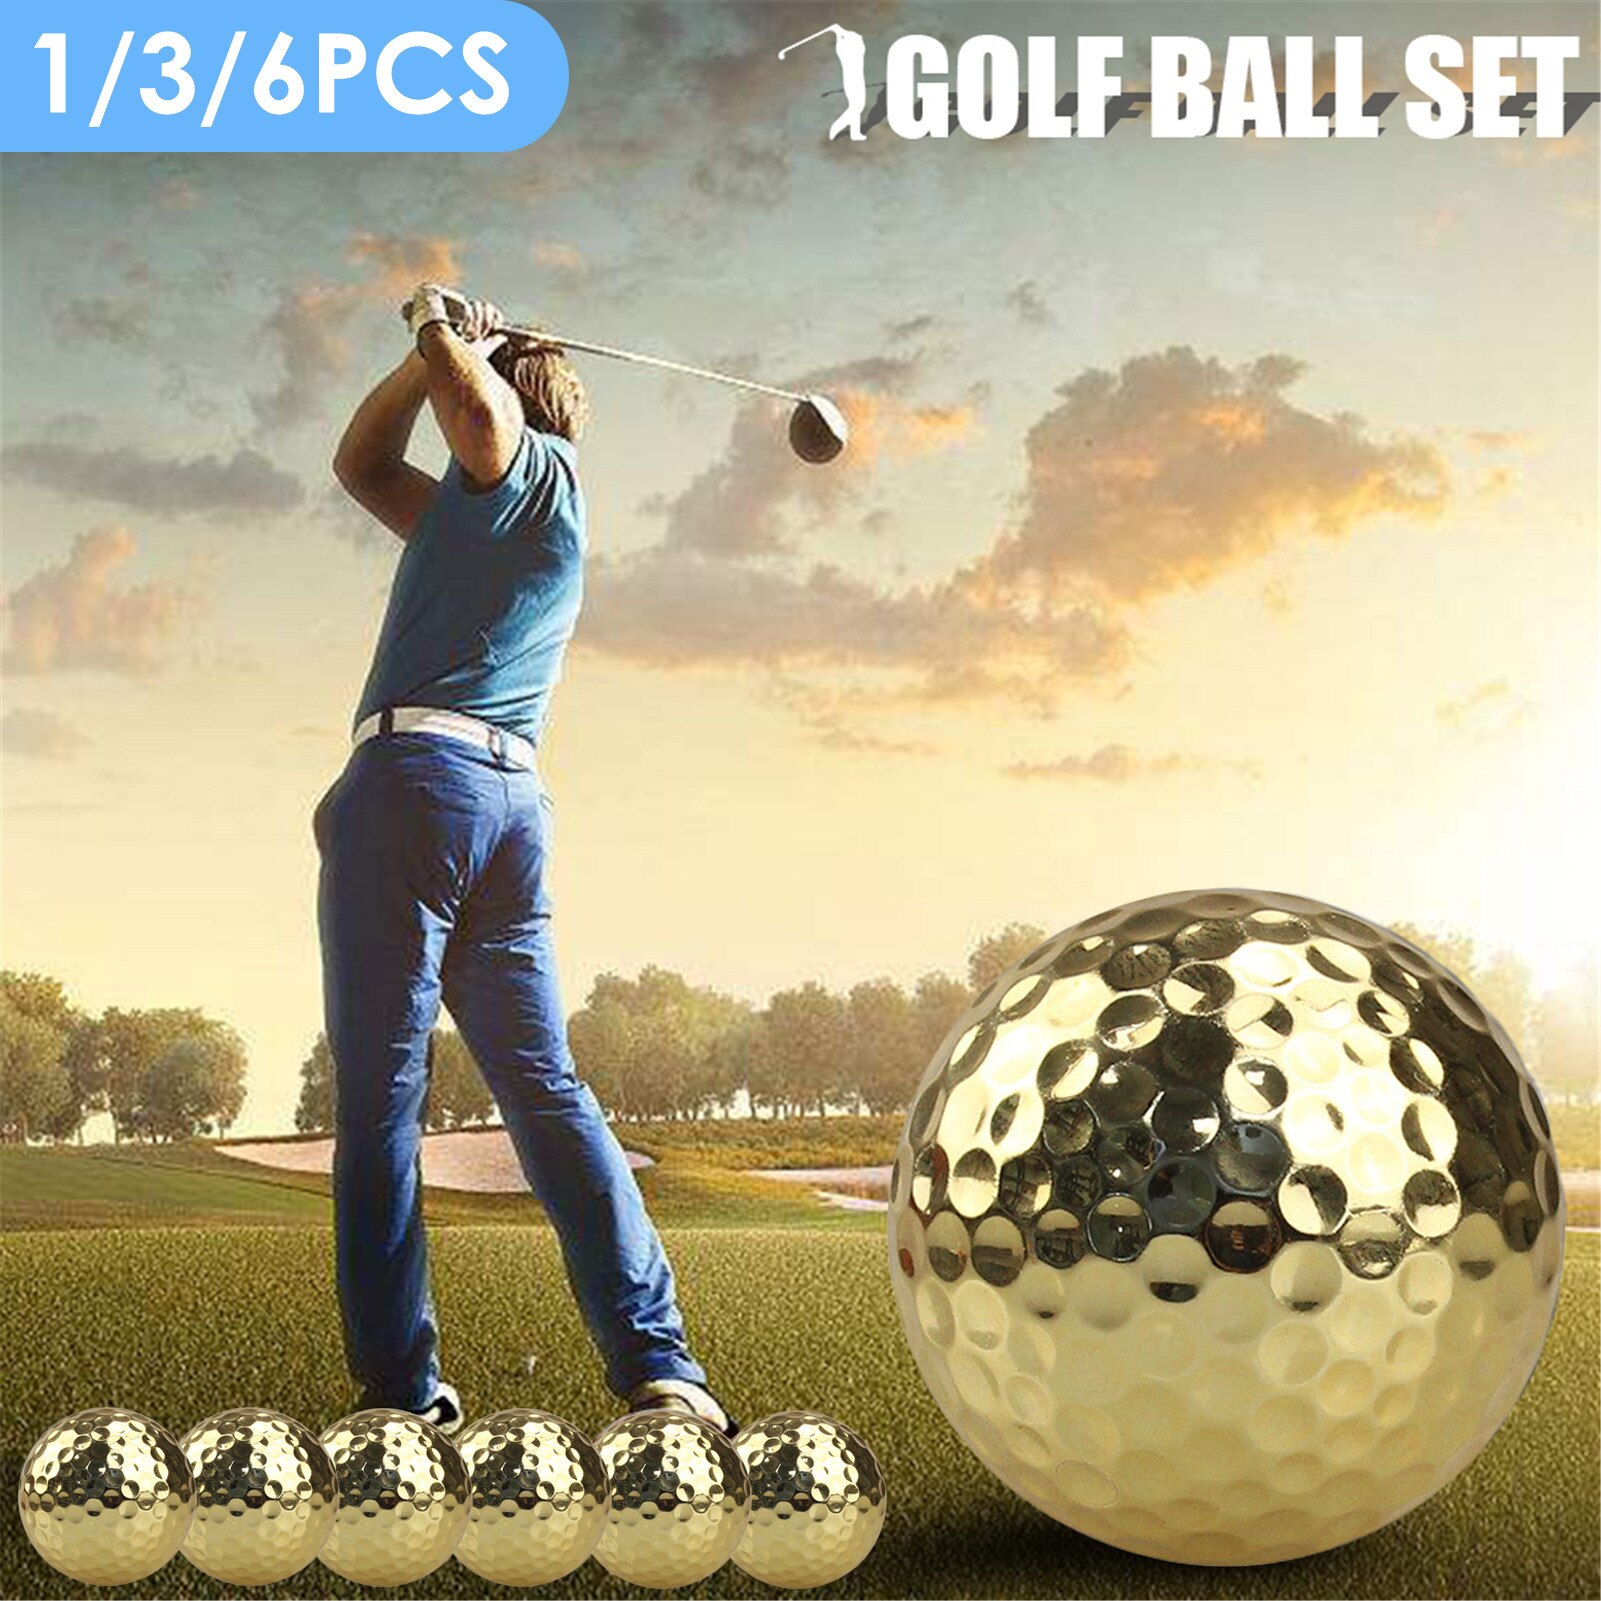 1 /3/ 6Pcs Praktijk Golfballen Exquisite Gouden Plated Training Bal Set Indoor Outdoor Praktijk Training Macth bal